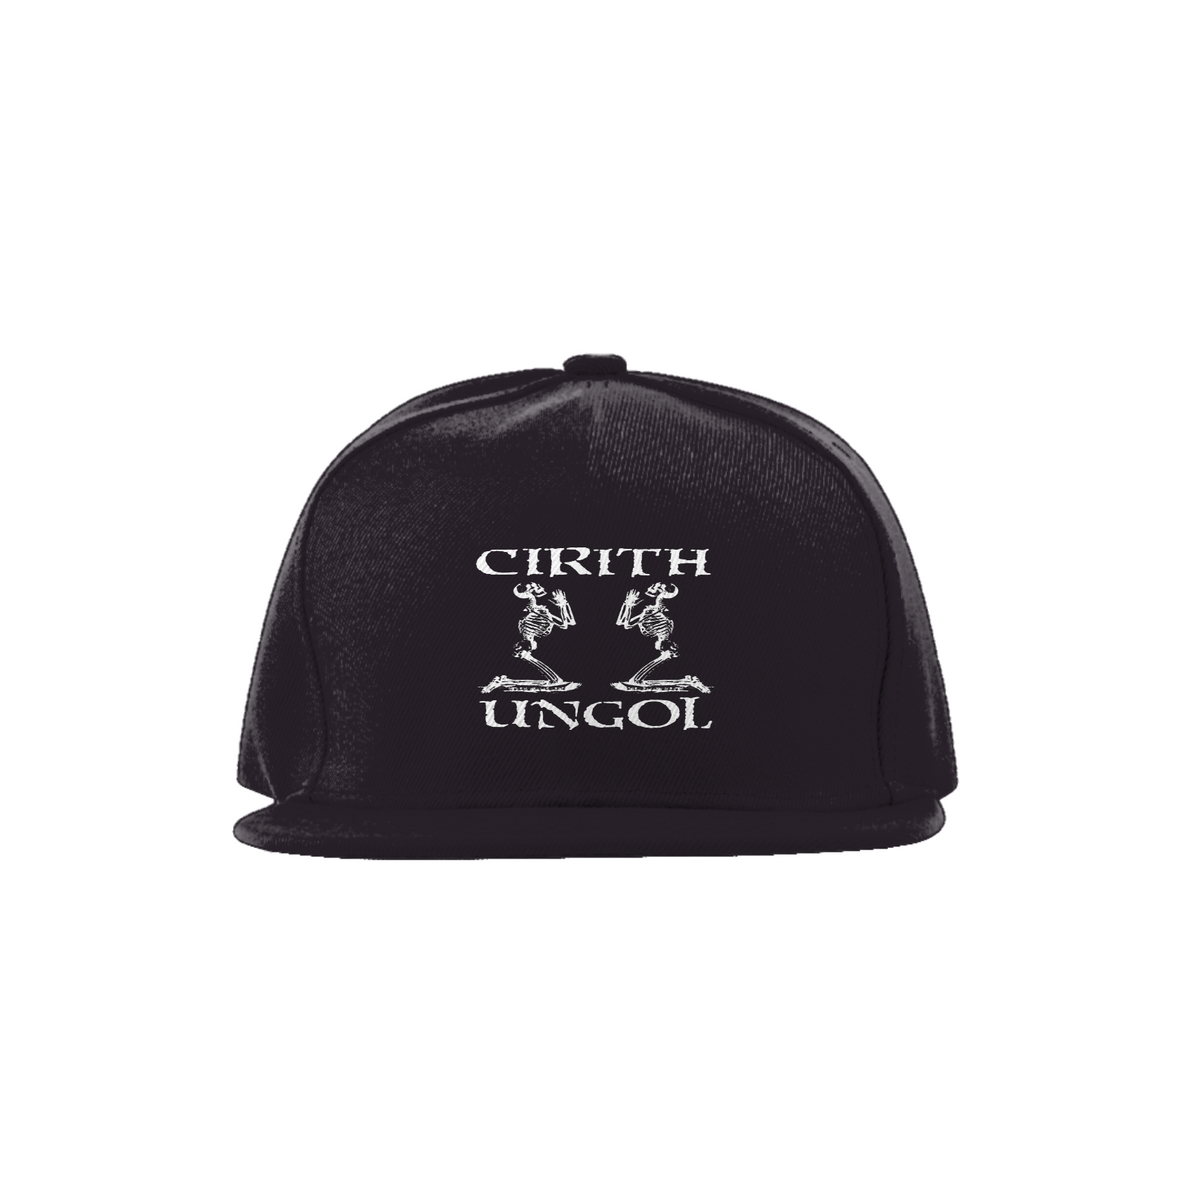 Nome do produto: Cirith Ungol